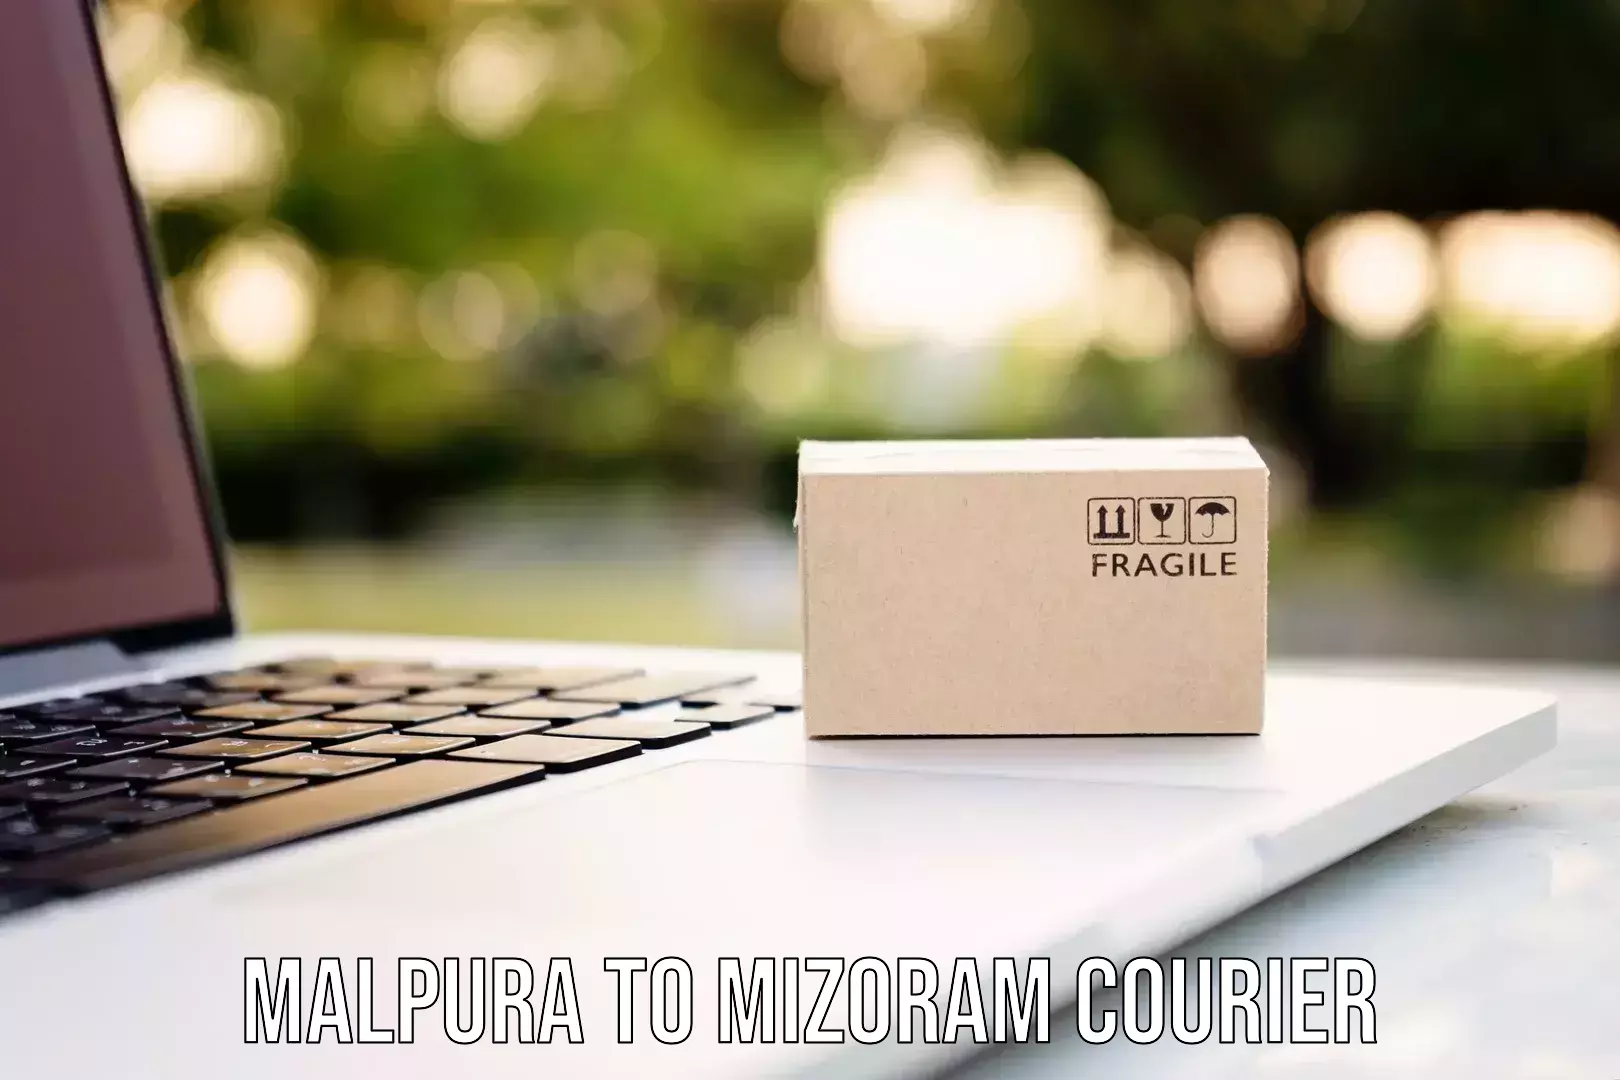 Premium courier solutions Malpura to Mizoram